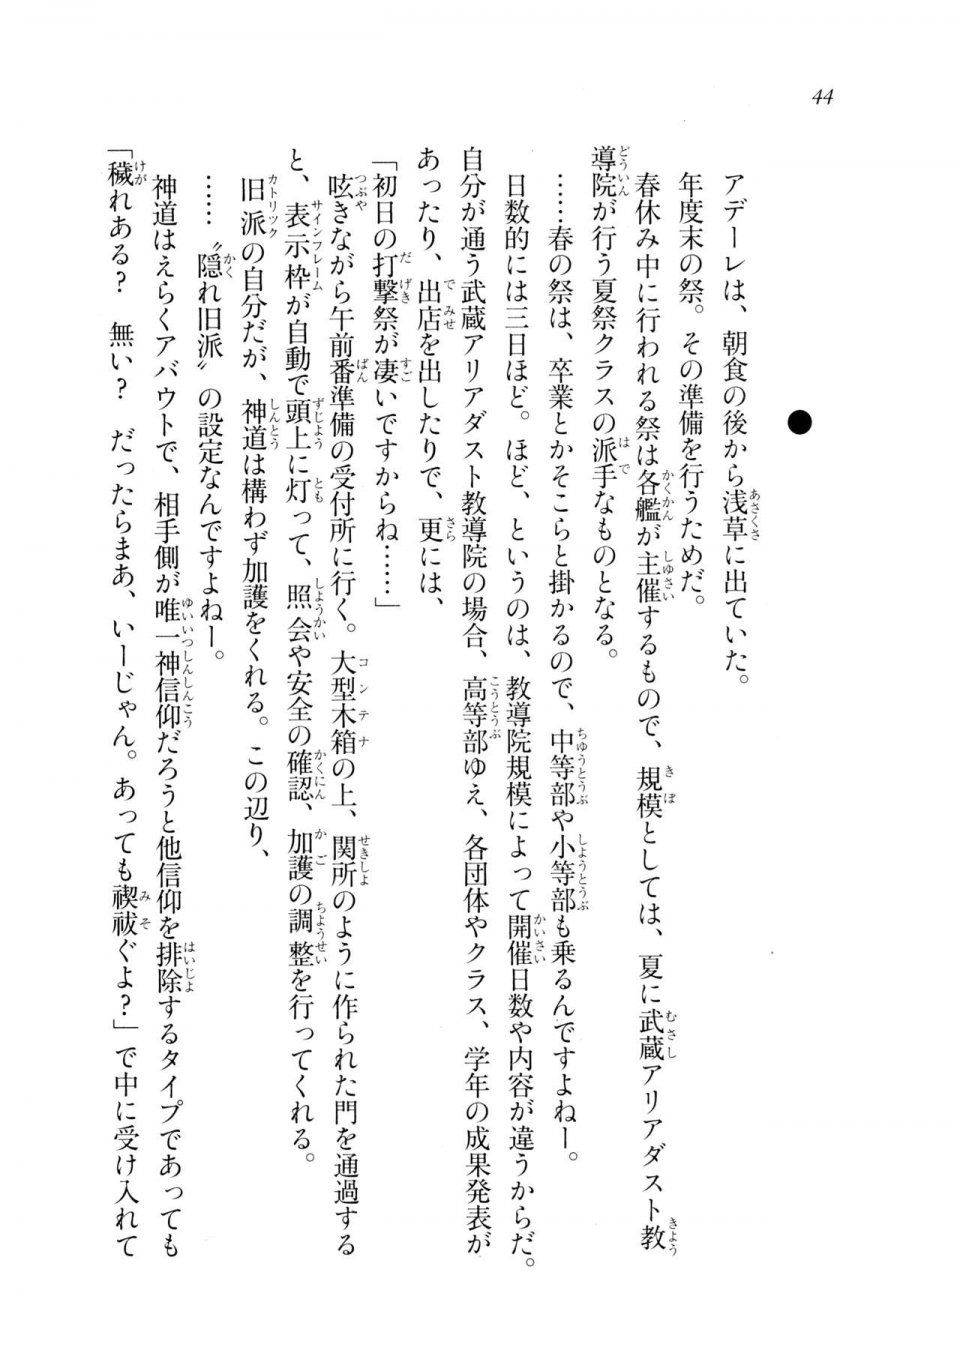 Kyoukai Senjou no Horizon LN Sidestory Vol 2 - Photo #42